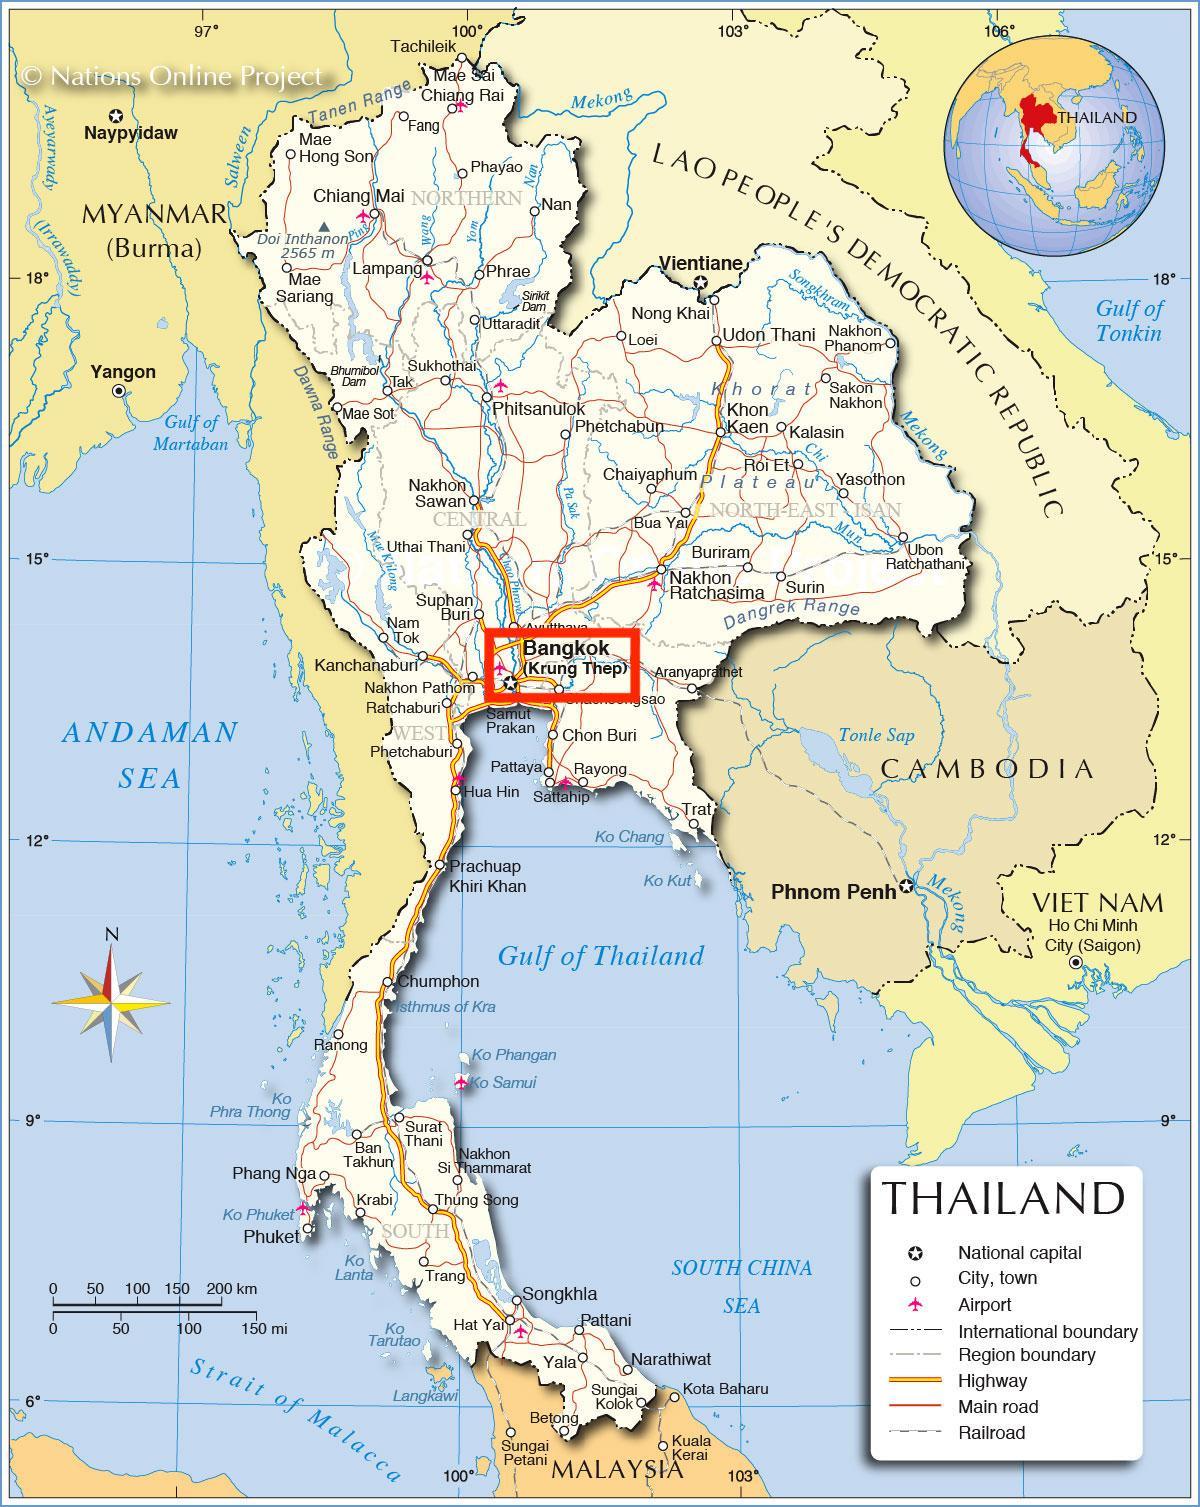 Бангкок (Крунг Тхеп) на карте Таиланда